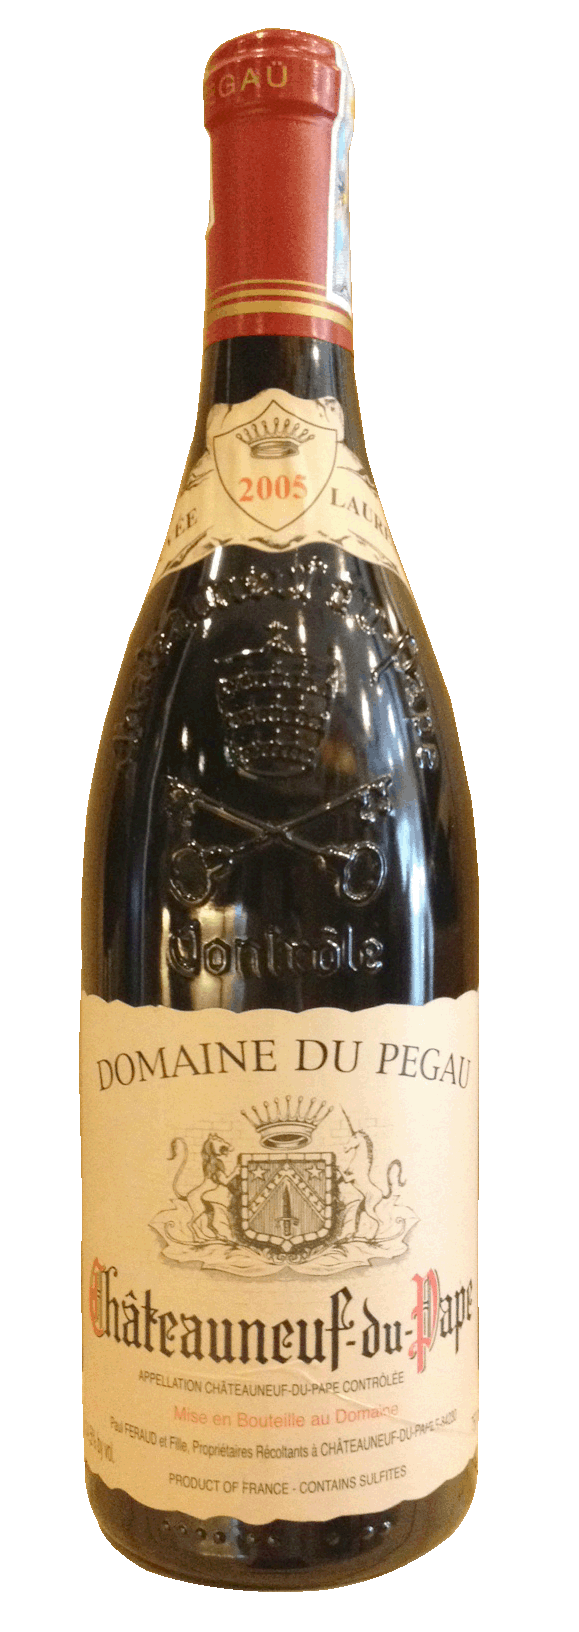 Domaine du Pégau 2005 - Rượu vang Pháp nhập khẩu